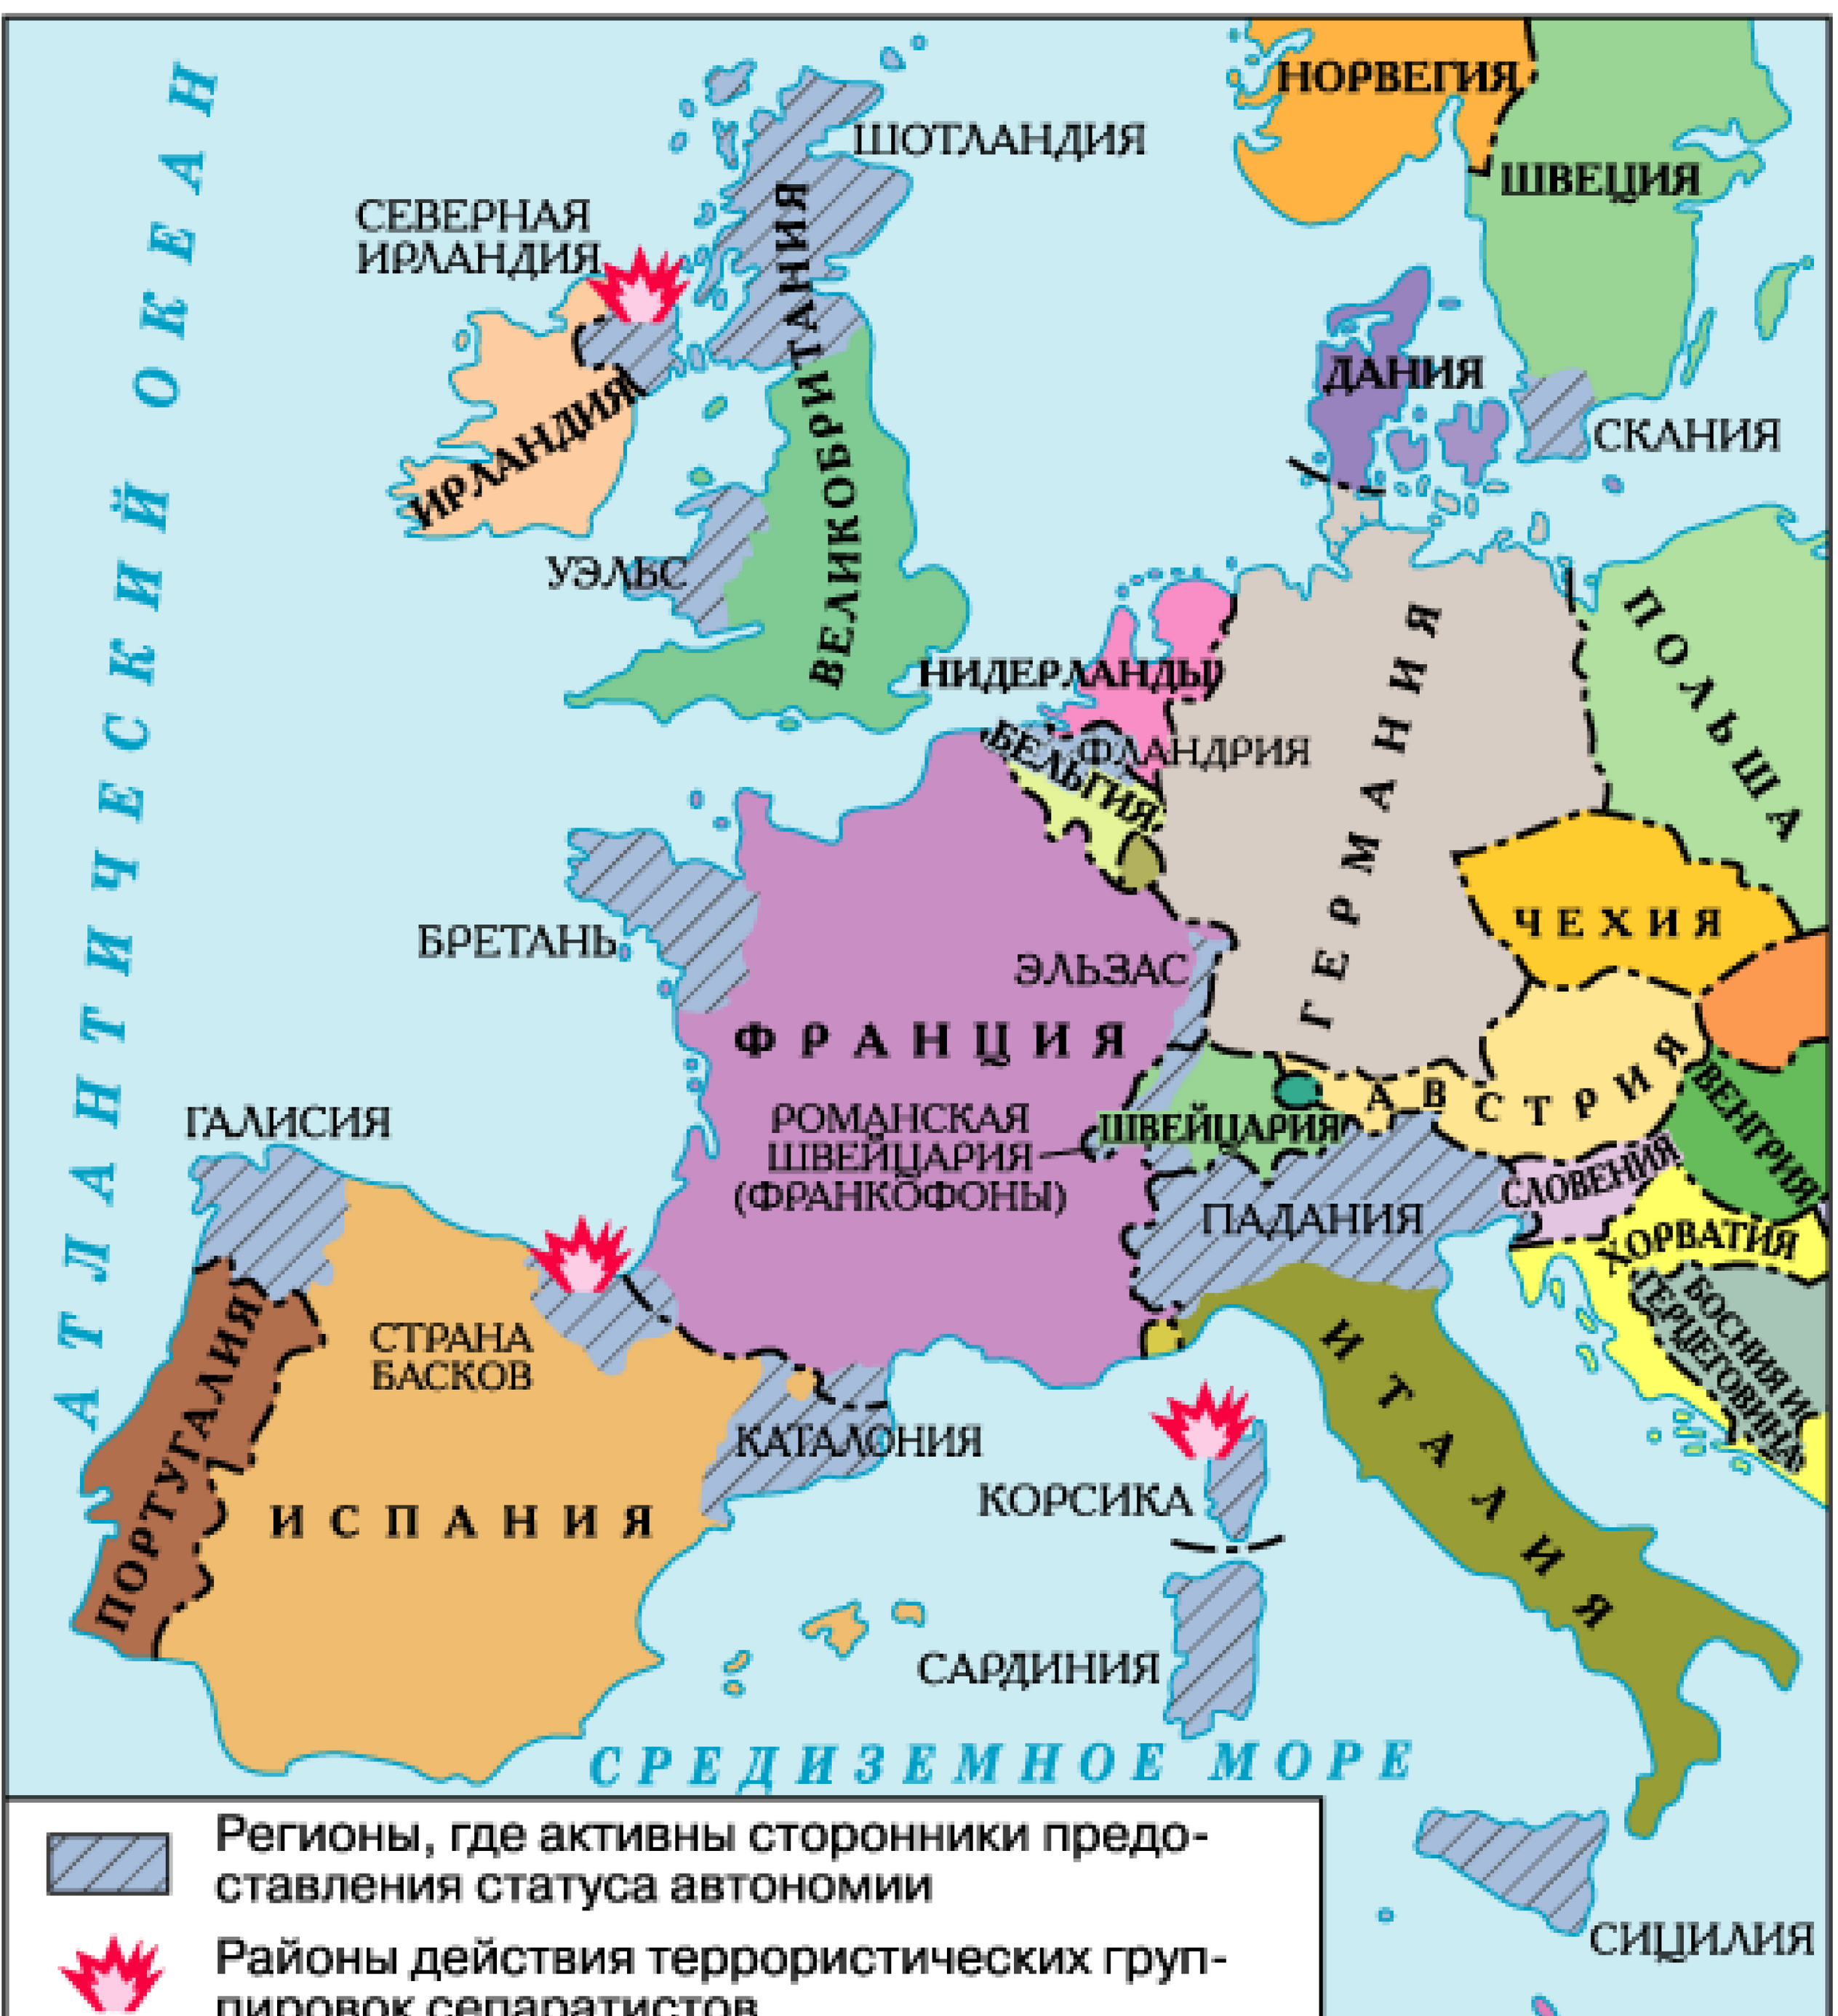 Зарубежная европа находится. Карта зарубежной Европы со странами и столицами. Карта зарубежной Европы государства и столицы. Страны Европы на карте с границами государств. Карта Европы со странами крупно на русском со столицами.